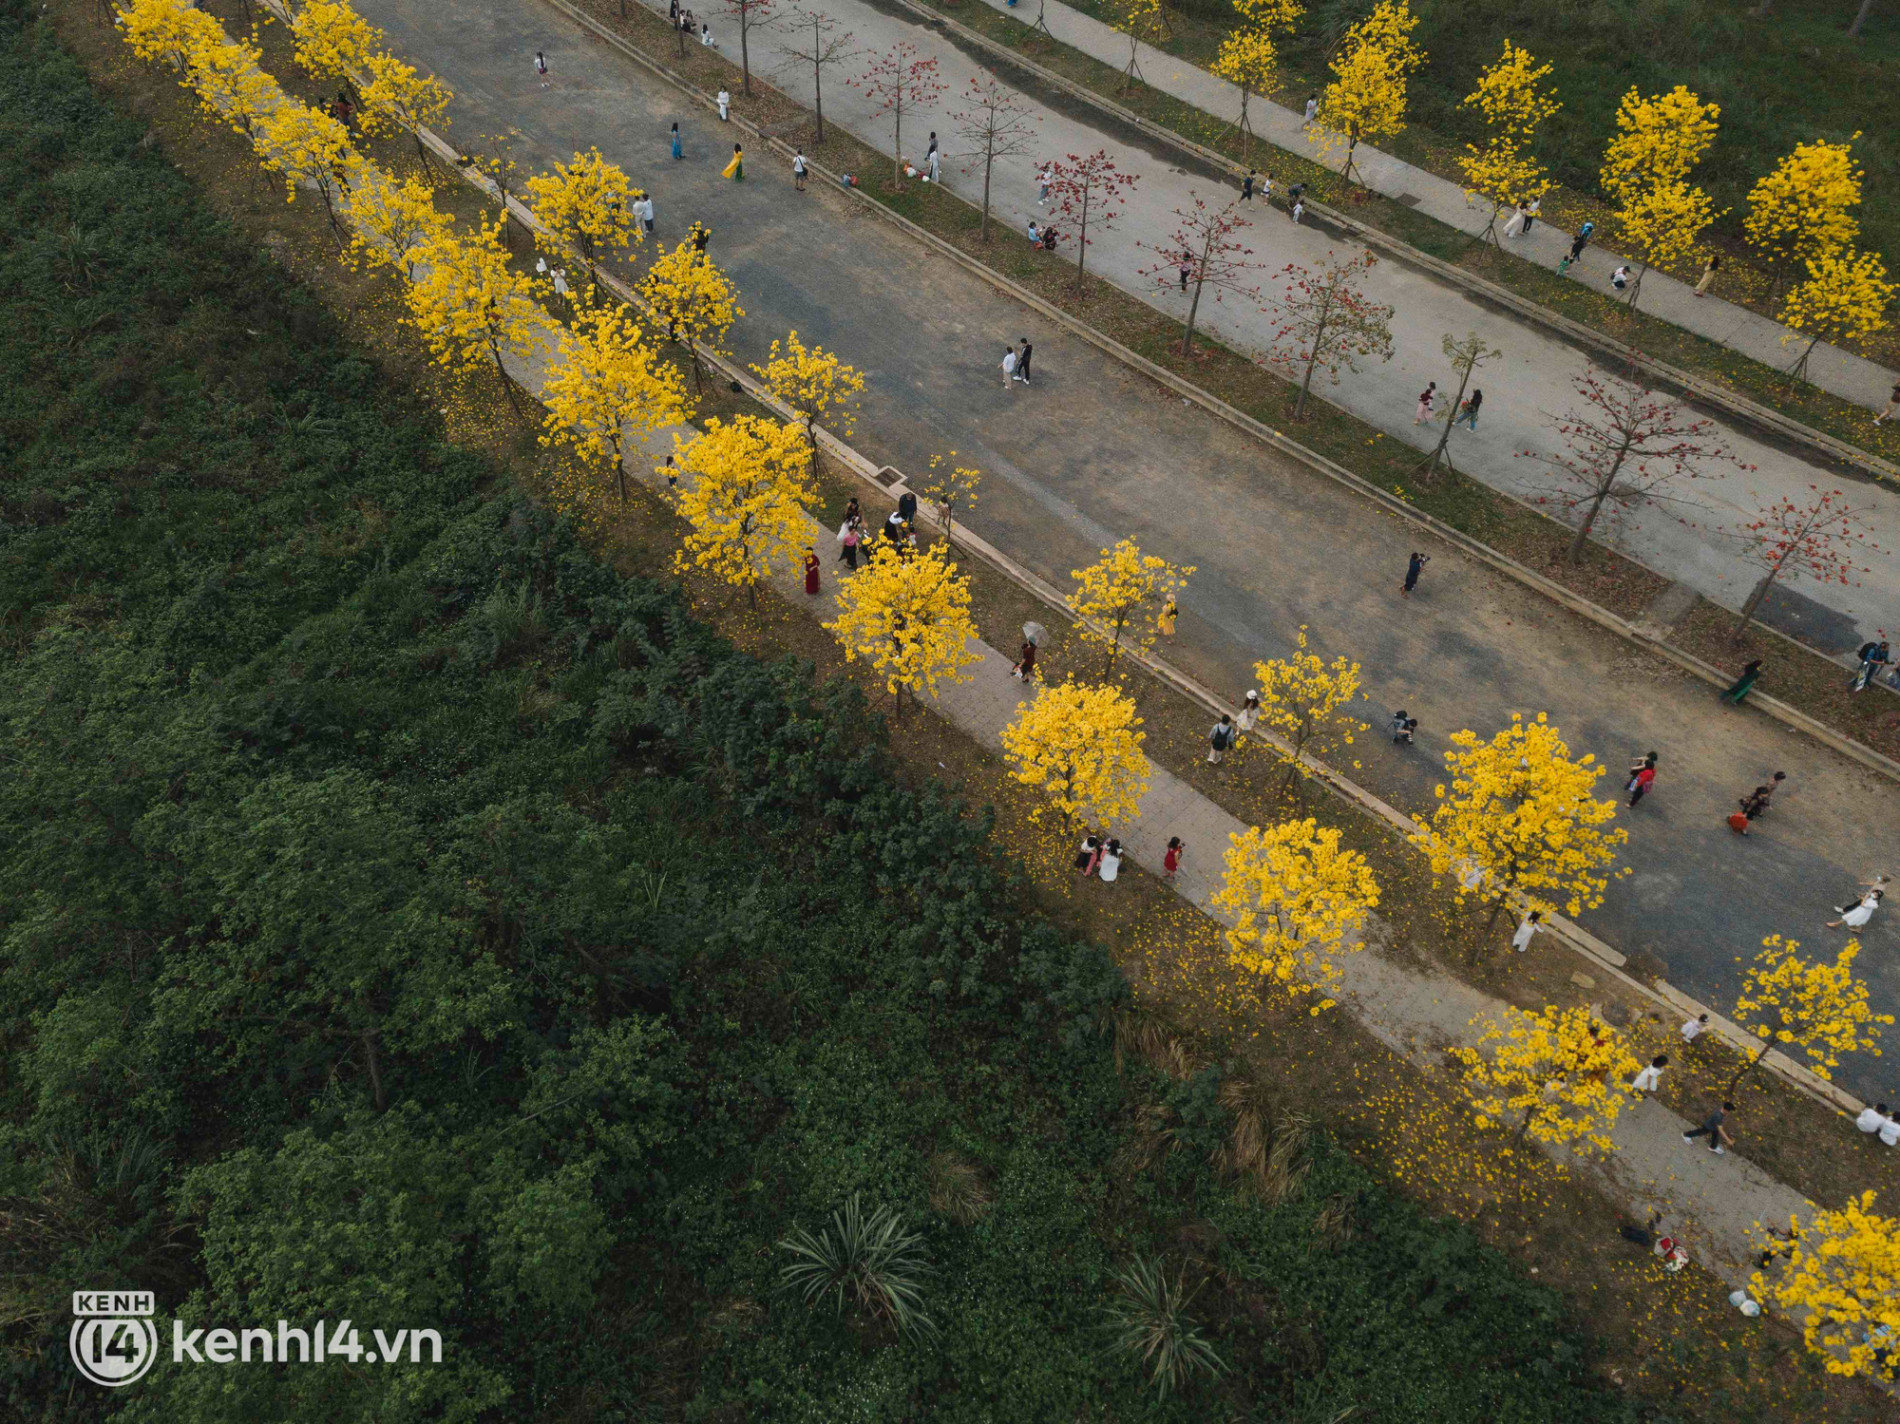 Con đường hoa vàng ở Hà Nội mới nổi 2 ngày đã đông nghịt người kéo đến check-in, có cả ekip “sống ảo” hùng hậu - Ảnh 9.